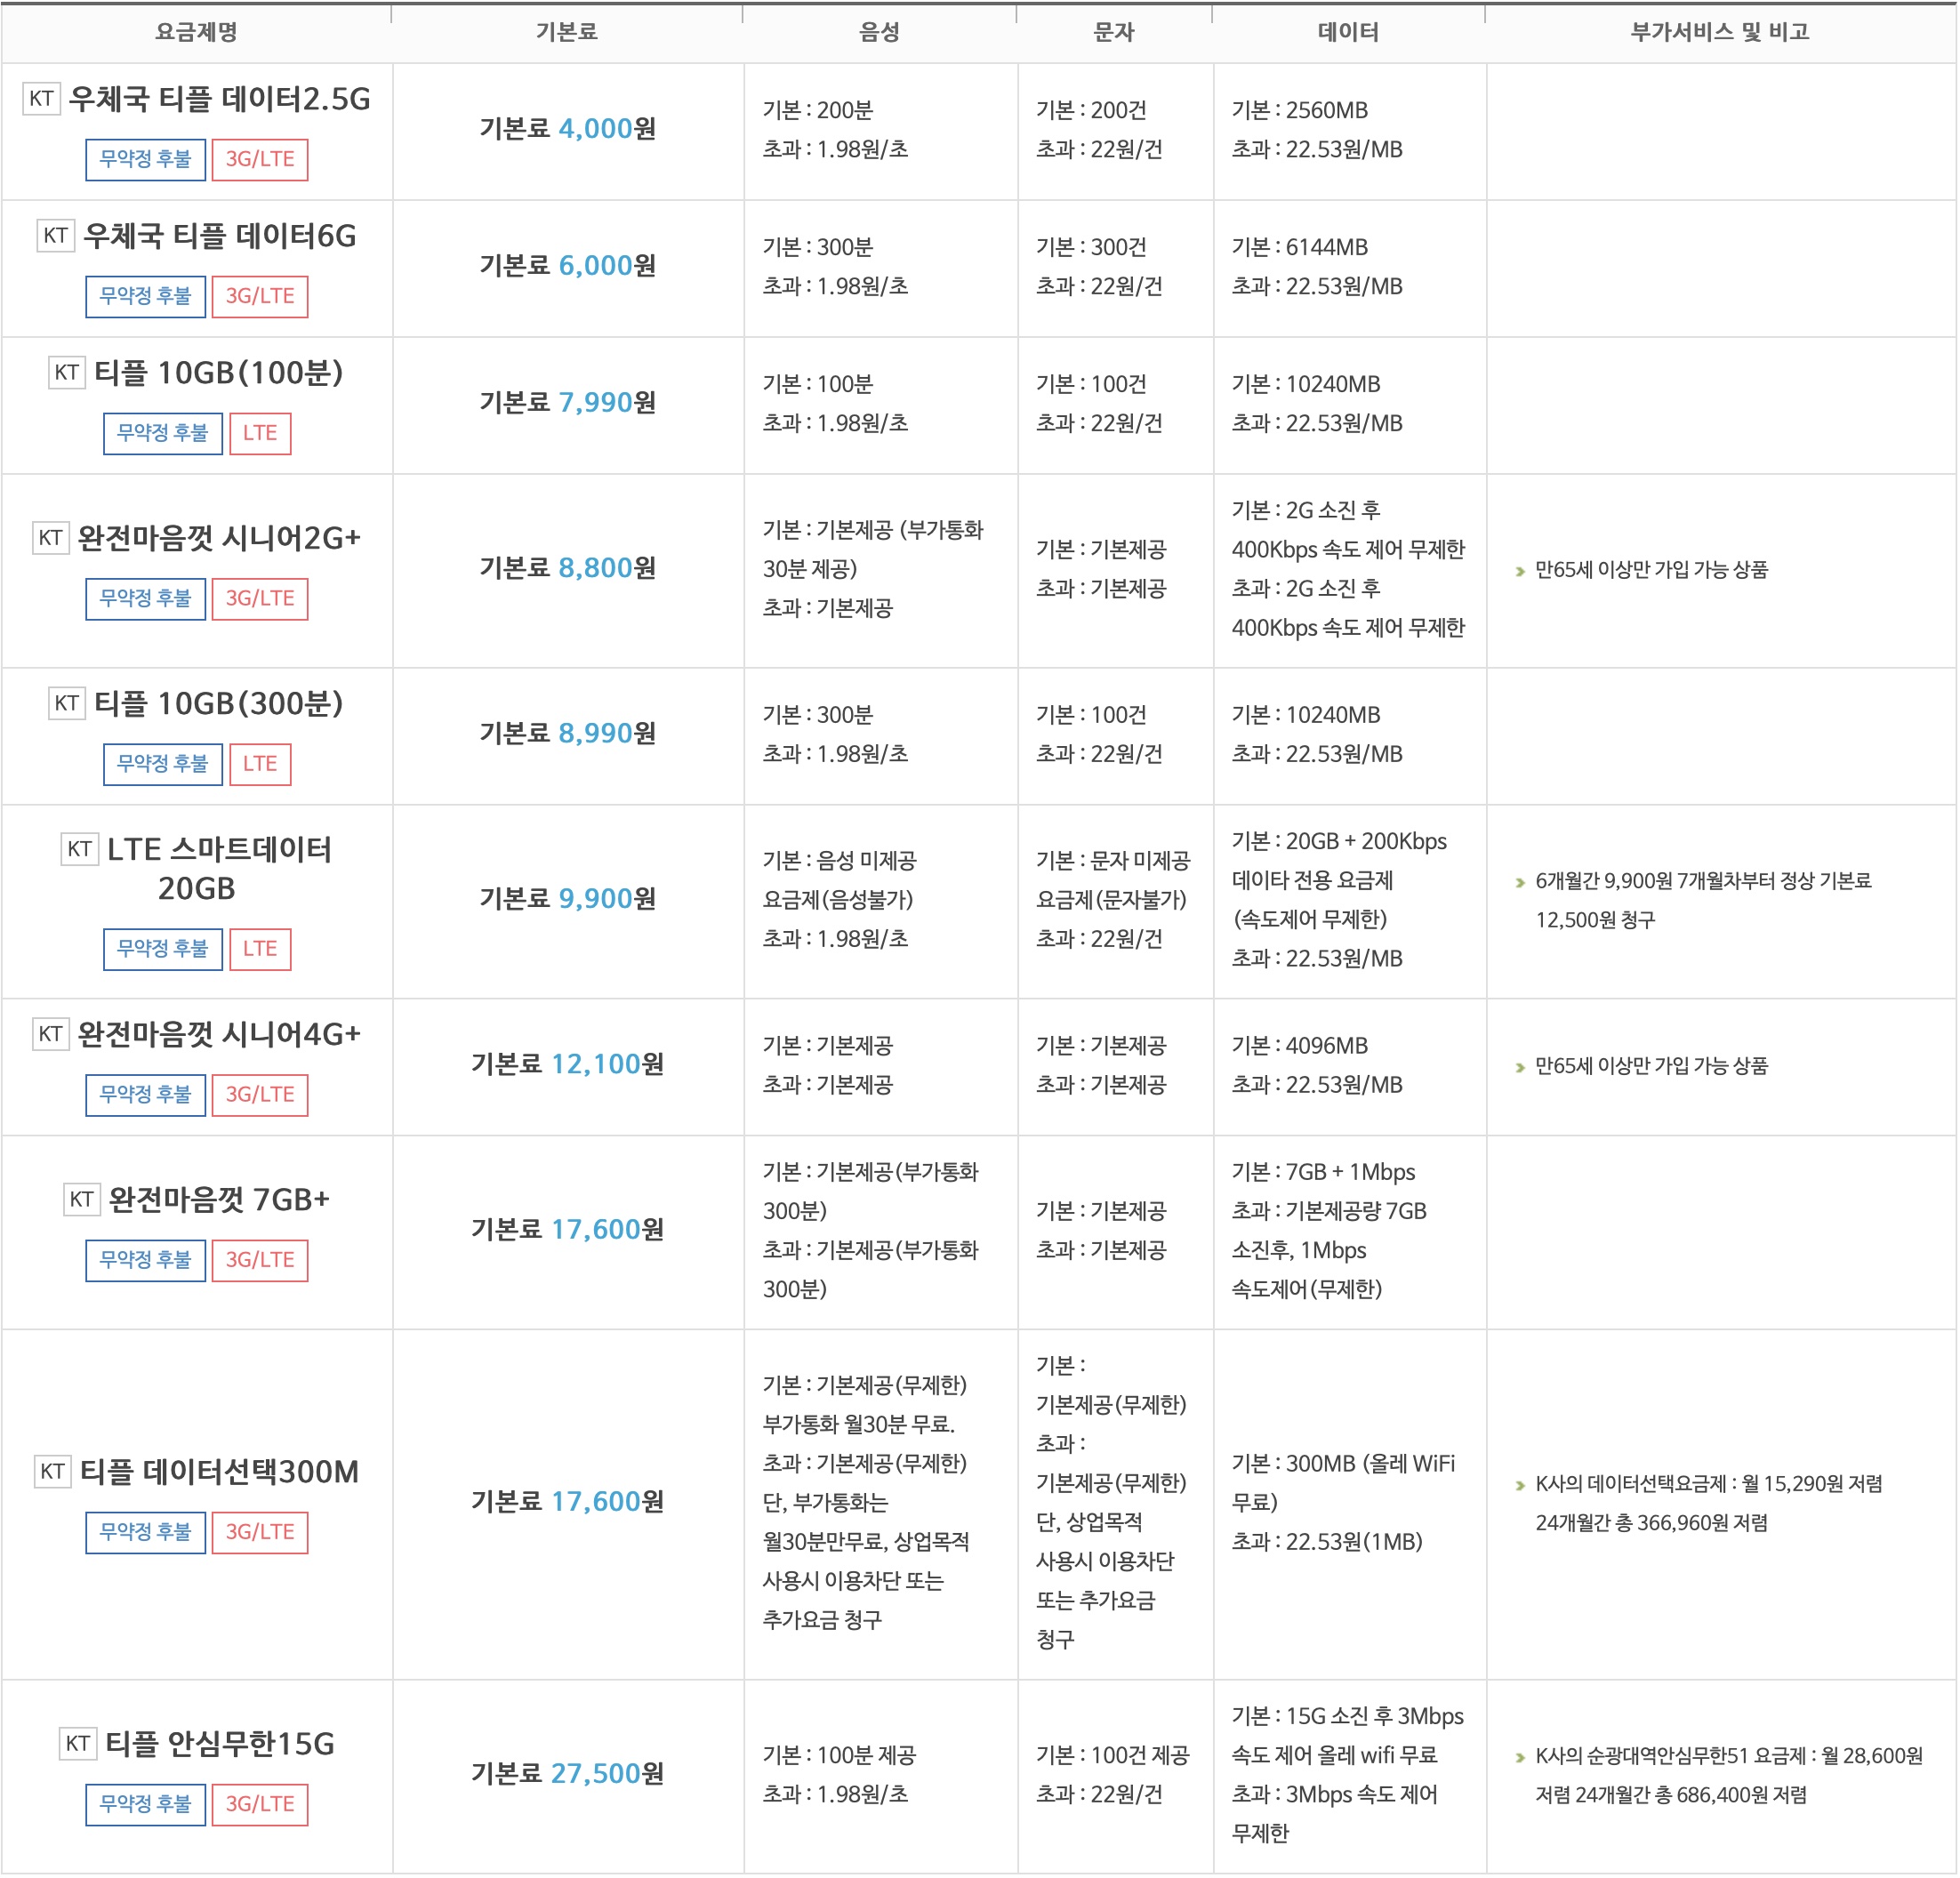 한국케이블텔레콤 티플 요금제 목록